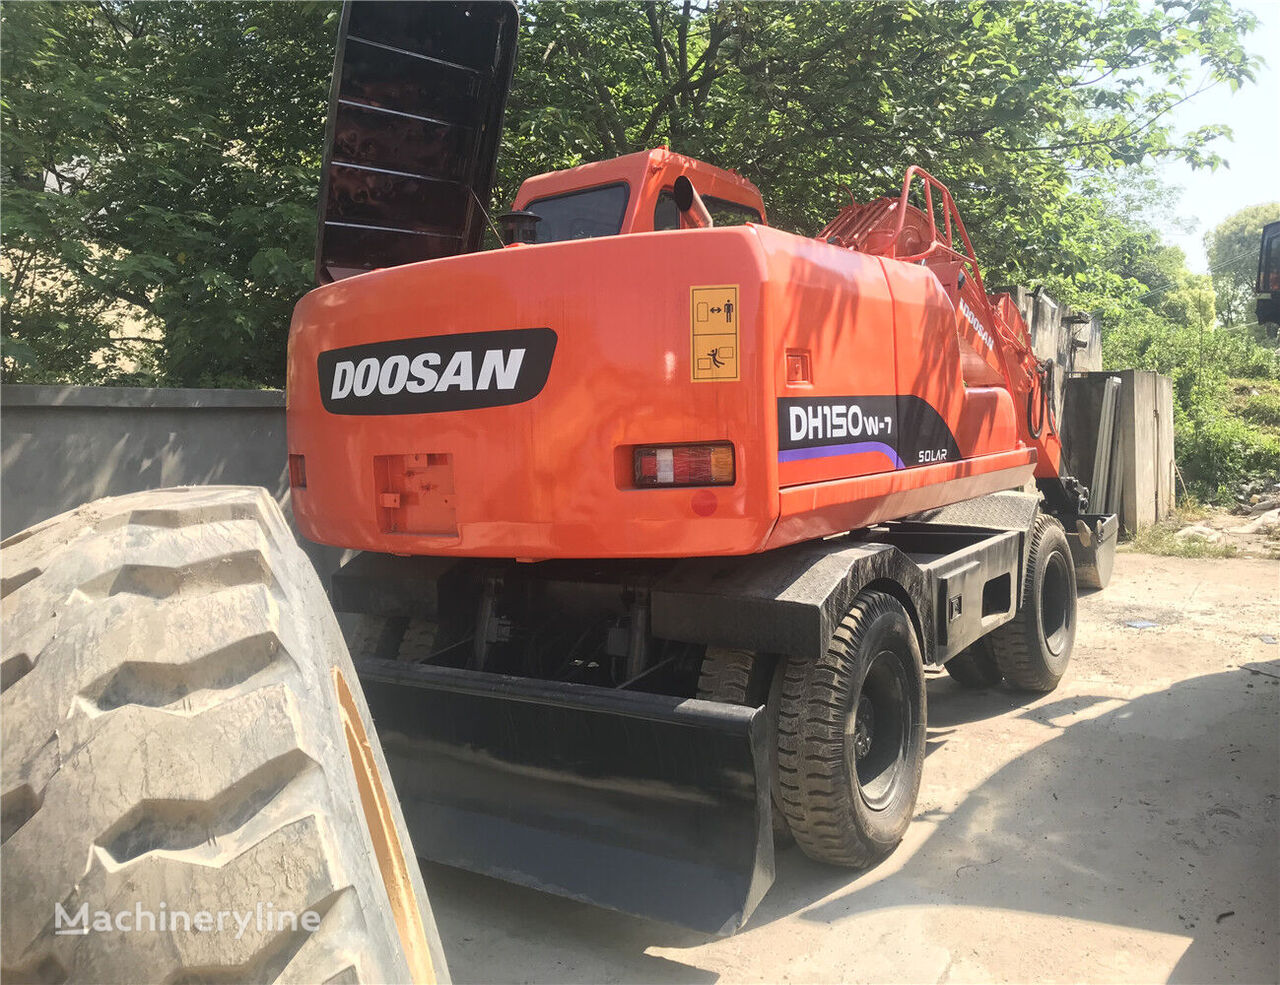 Doosan DH150W wheel excavator